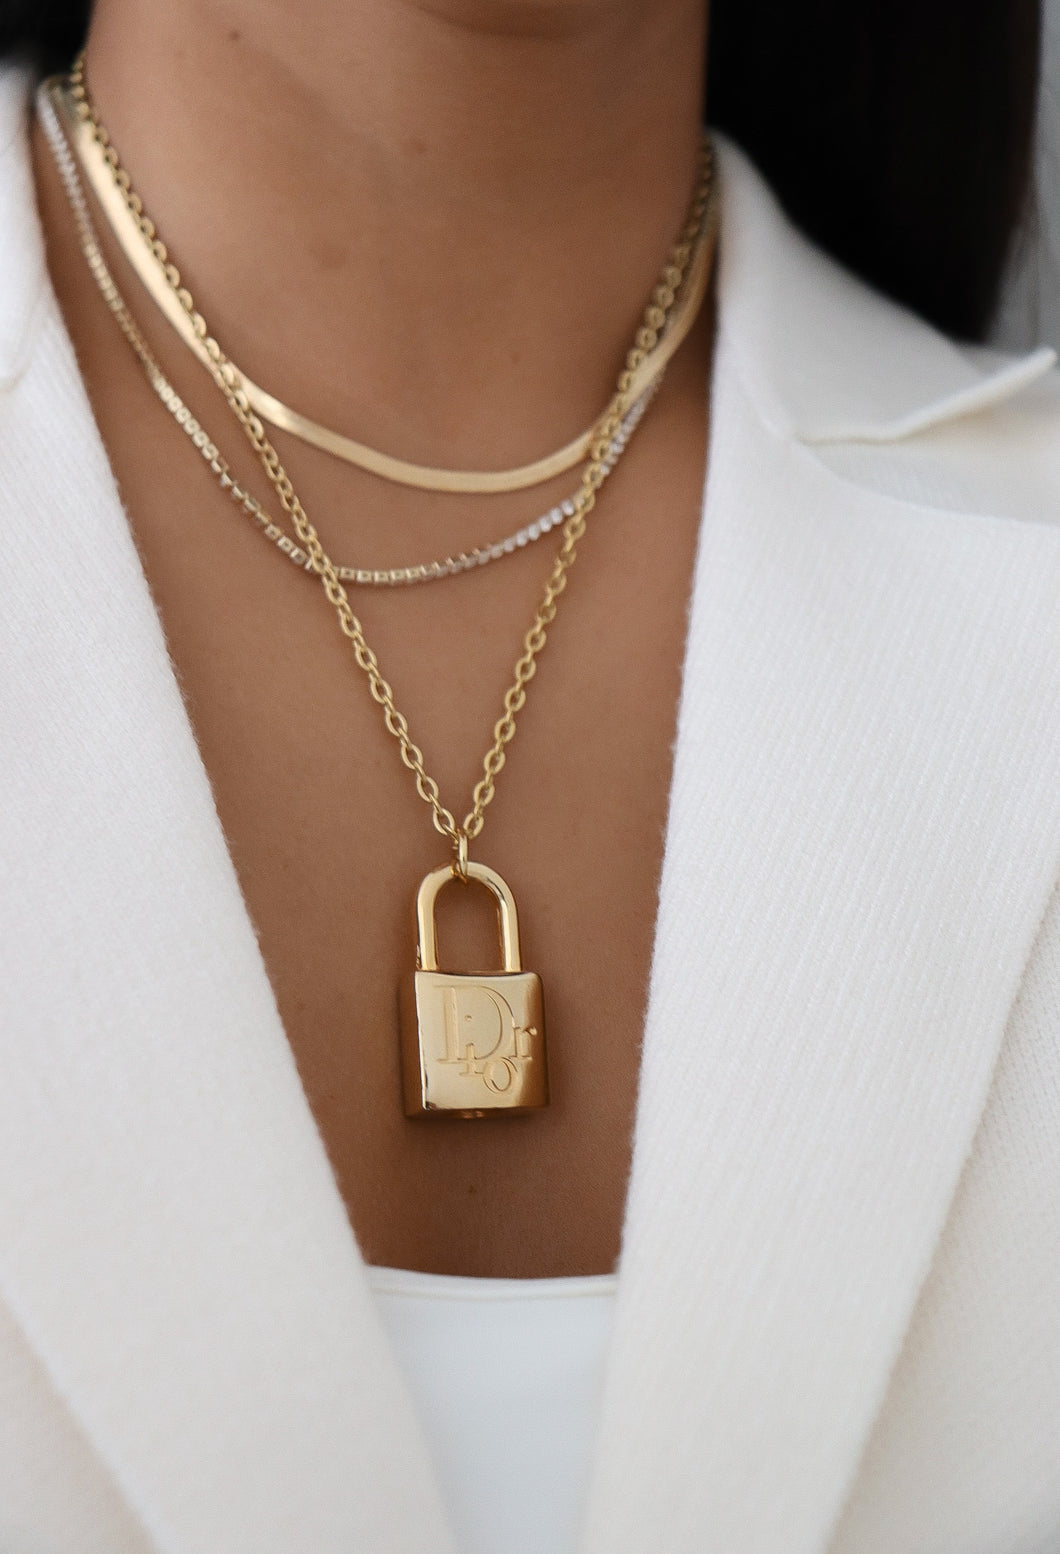 Dior golden lock